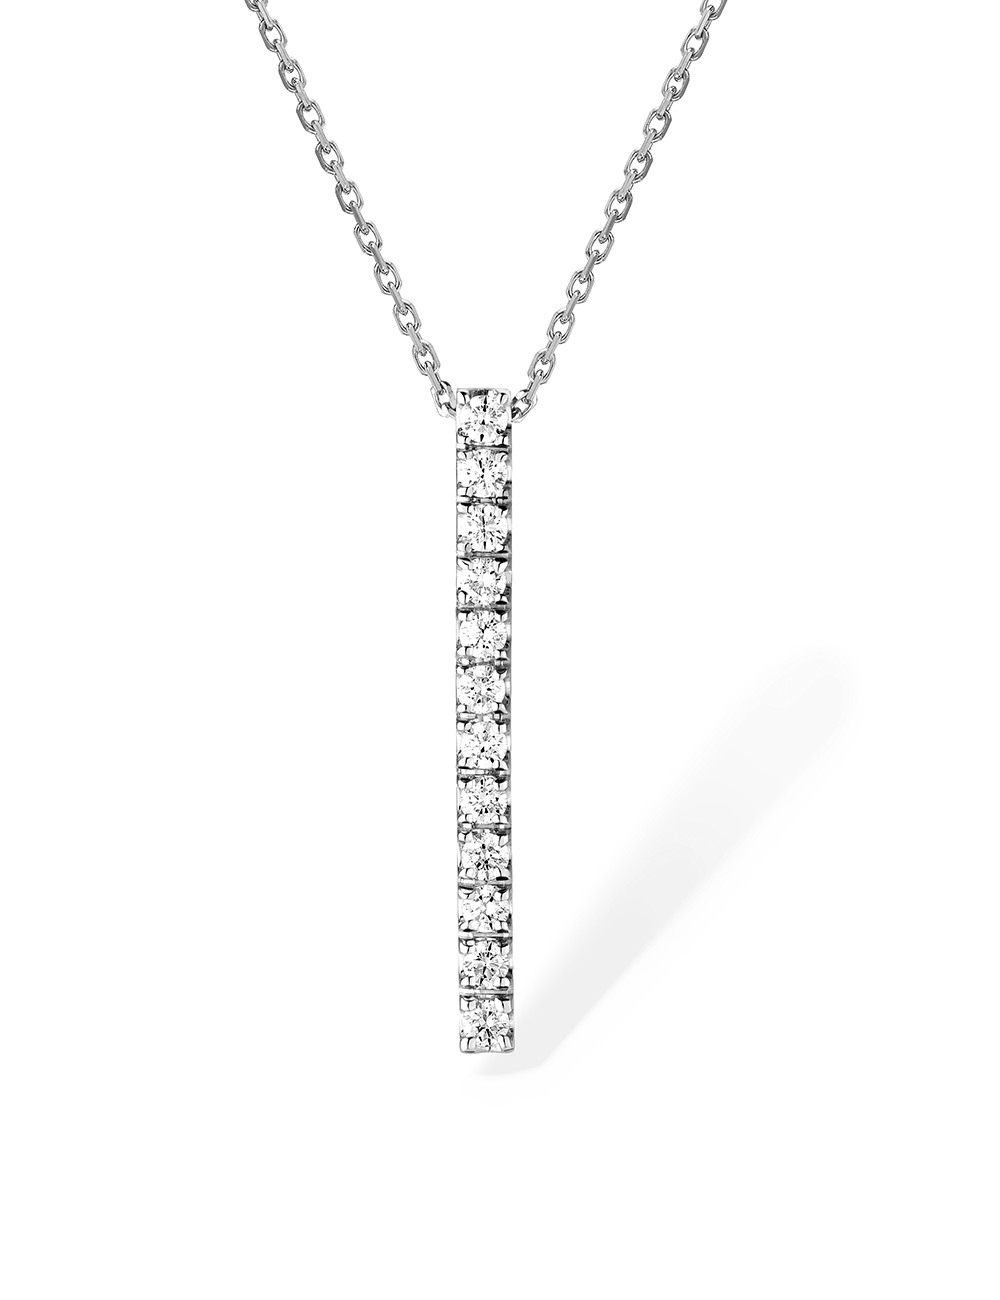 12 diamants, 12 éclats : Découvrez notre pendentif femme en or blanc serti d'une barrette de 12 diamants blancs